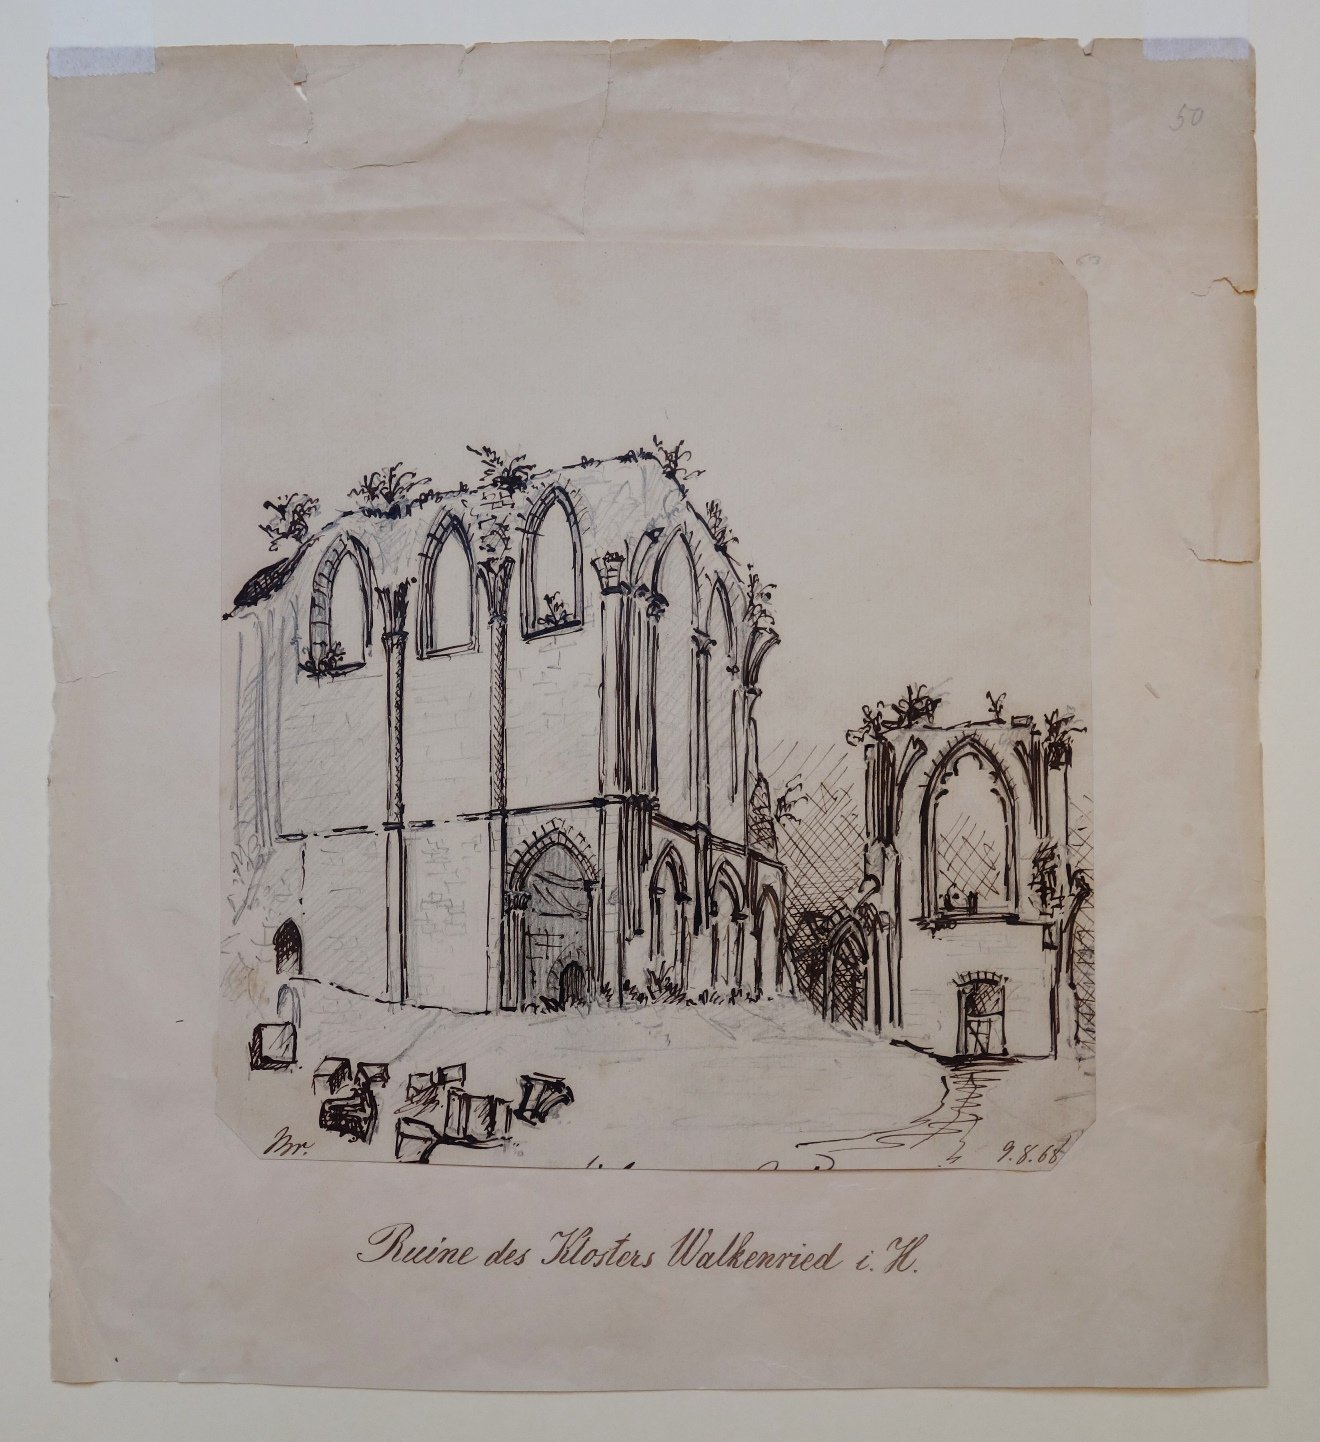 Walkenried: Klosterruine, gezeichnet von Breton, 9. August 1868 (Schloß Wernigerode GmbH RR-F)